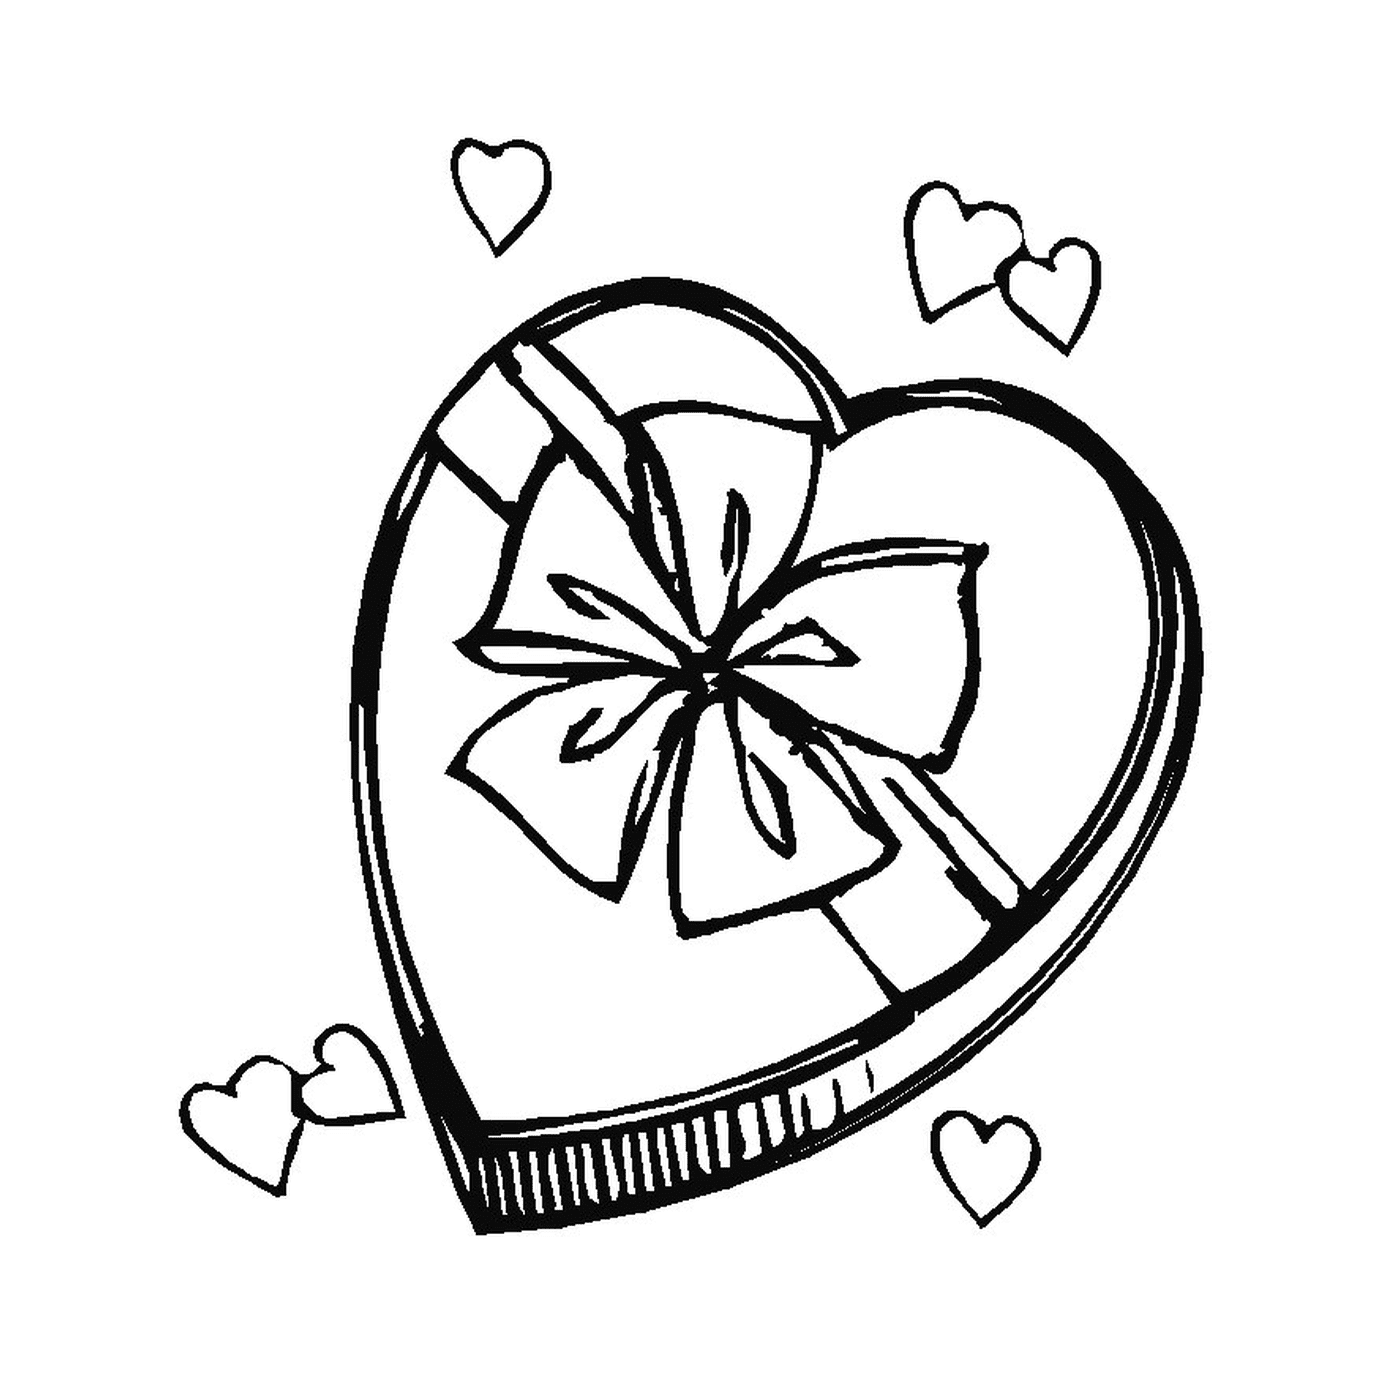  Uma caixa aberta em forma de coração com um nó 